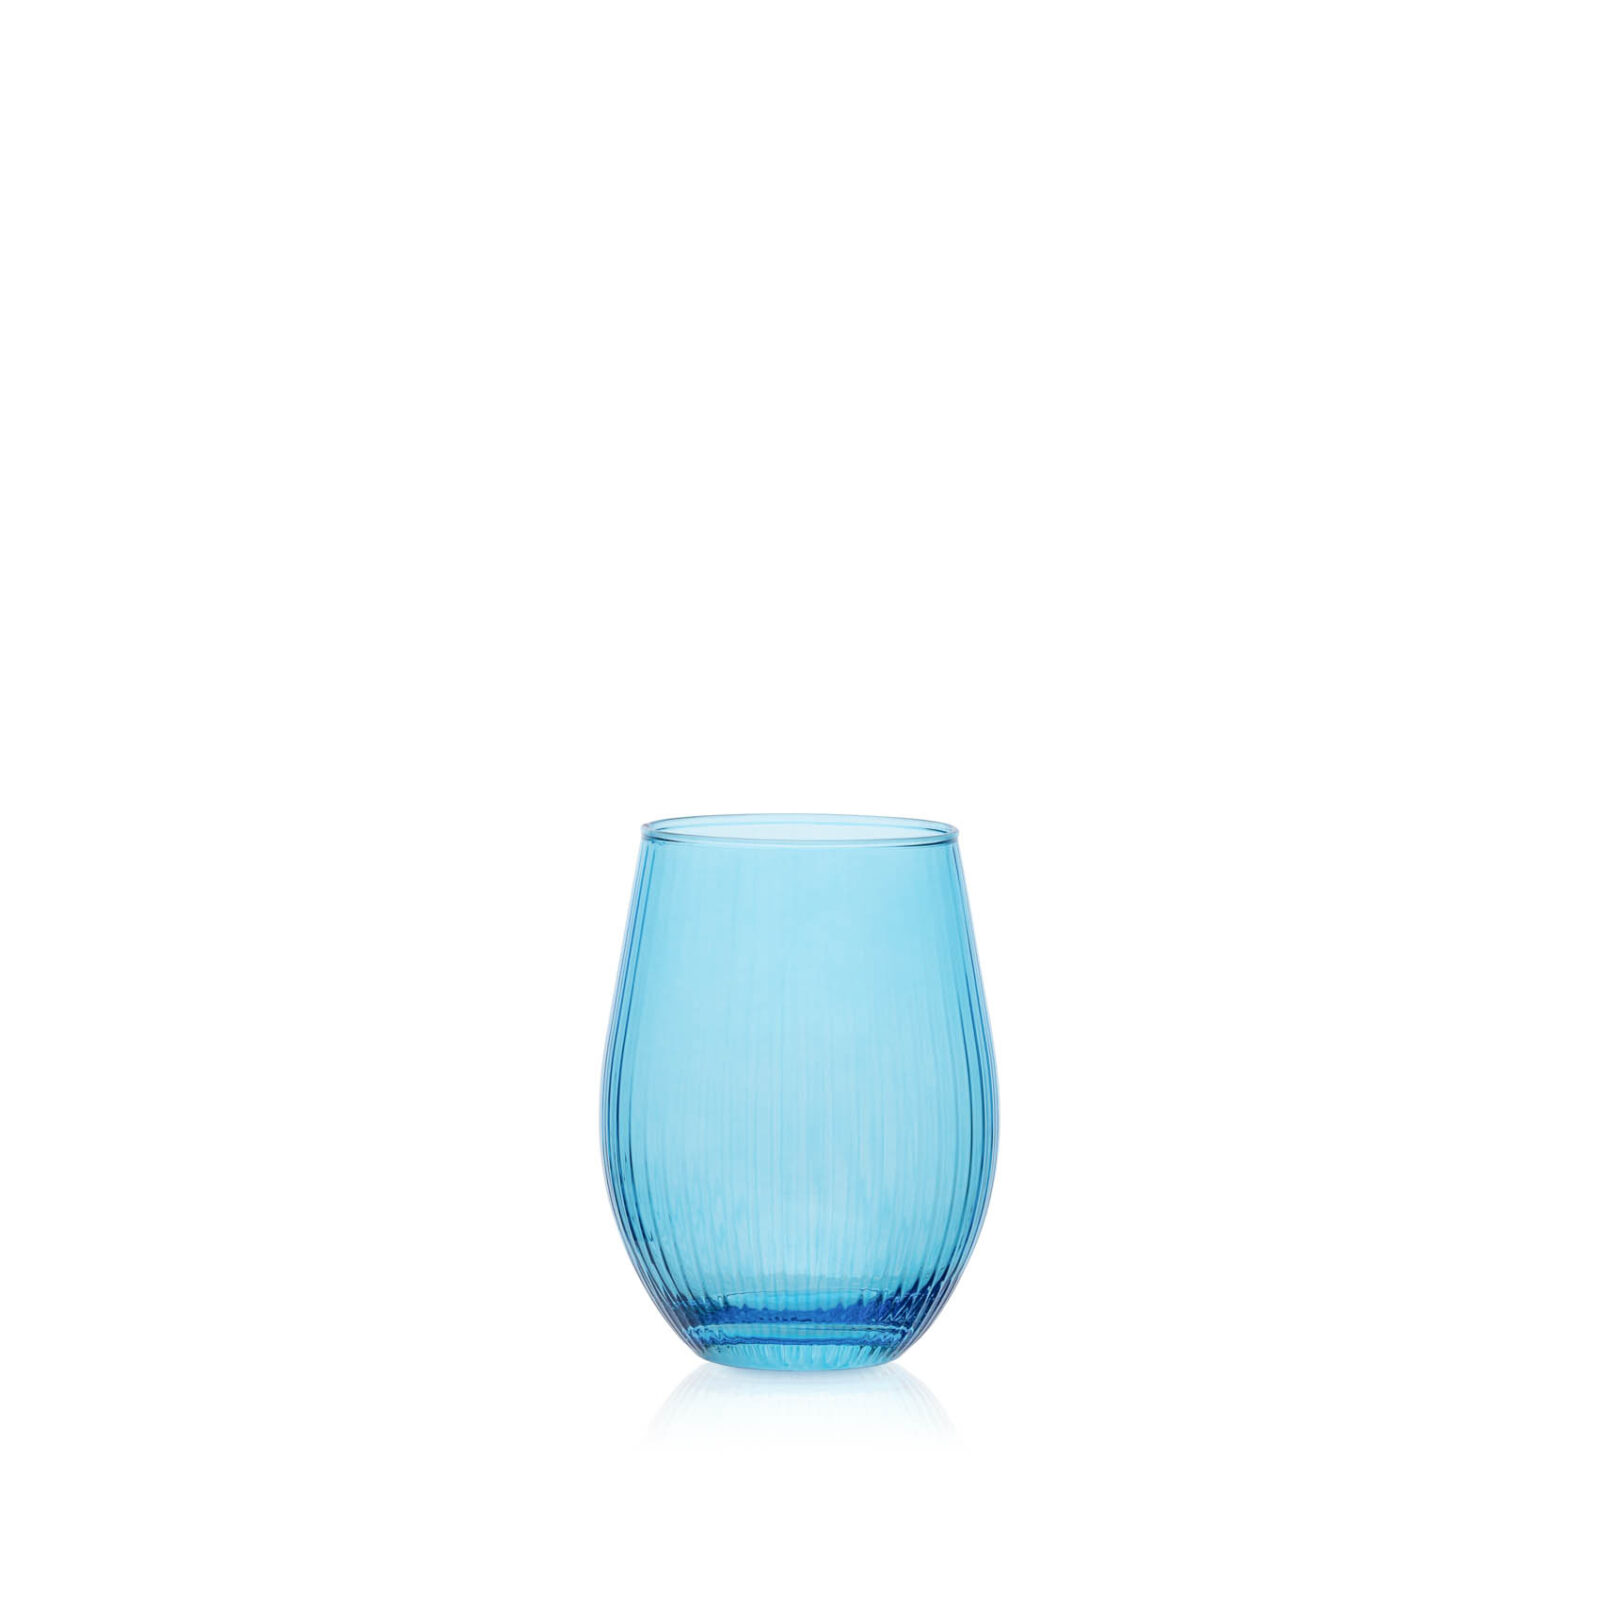 Opływowa szklanka w prążki niebieska